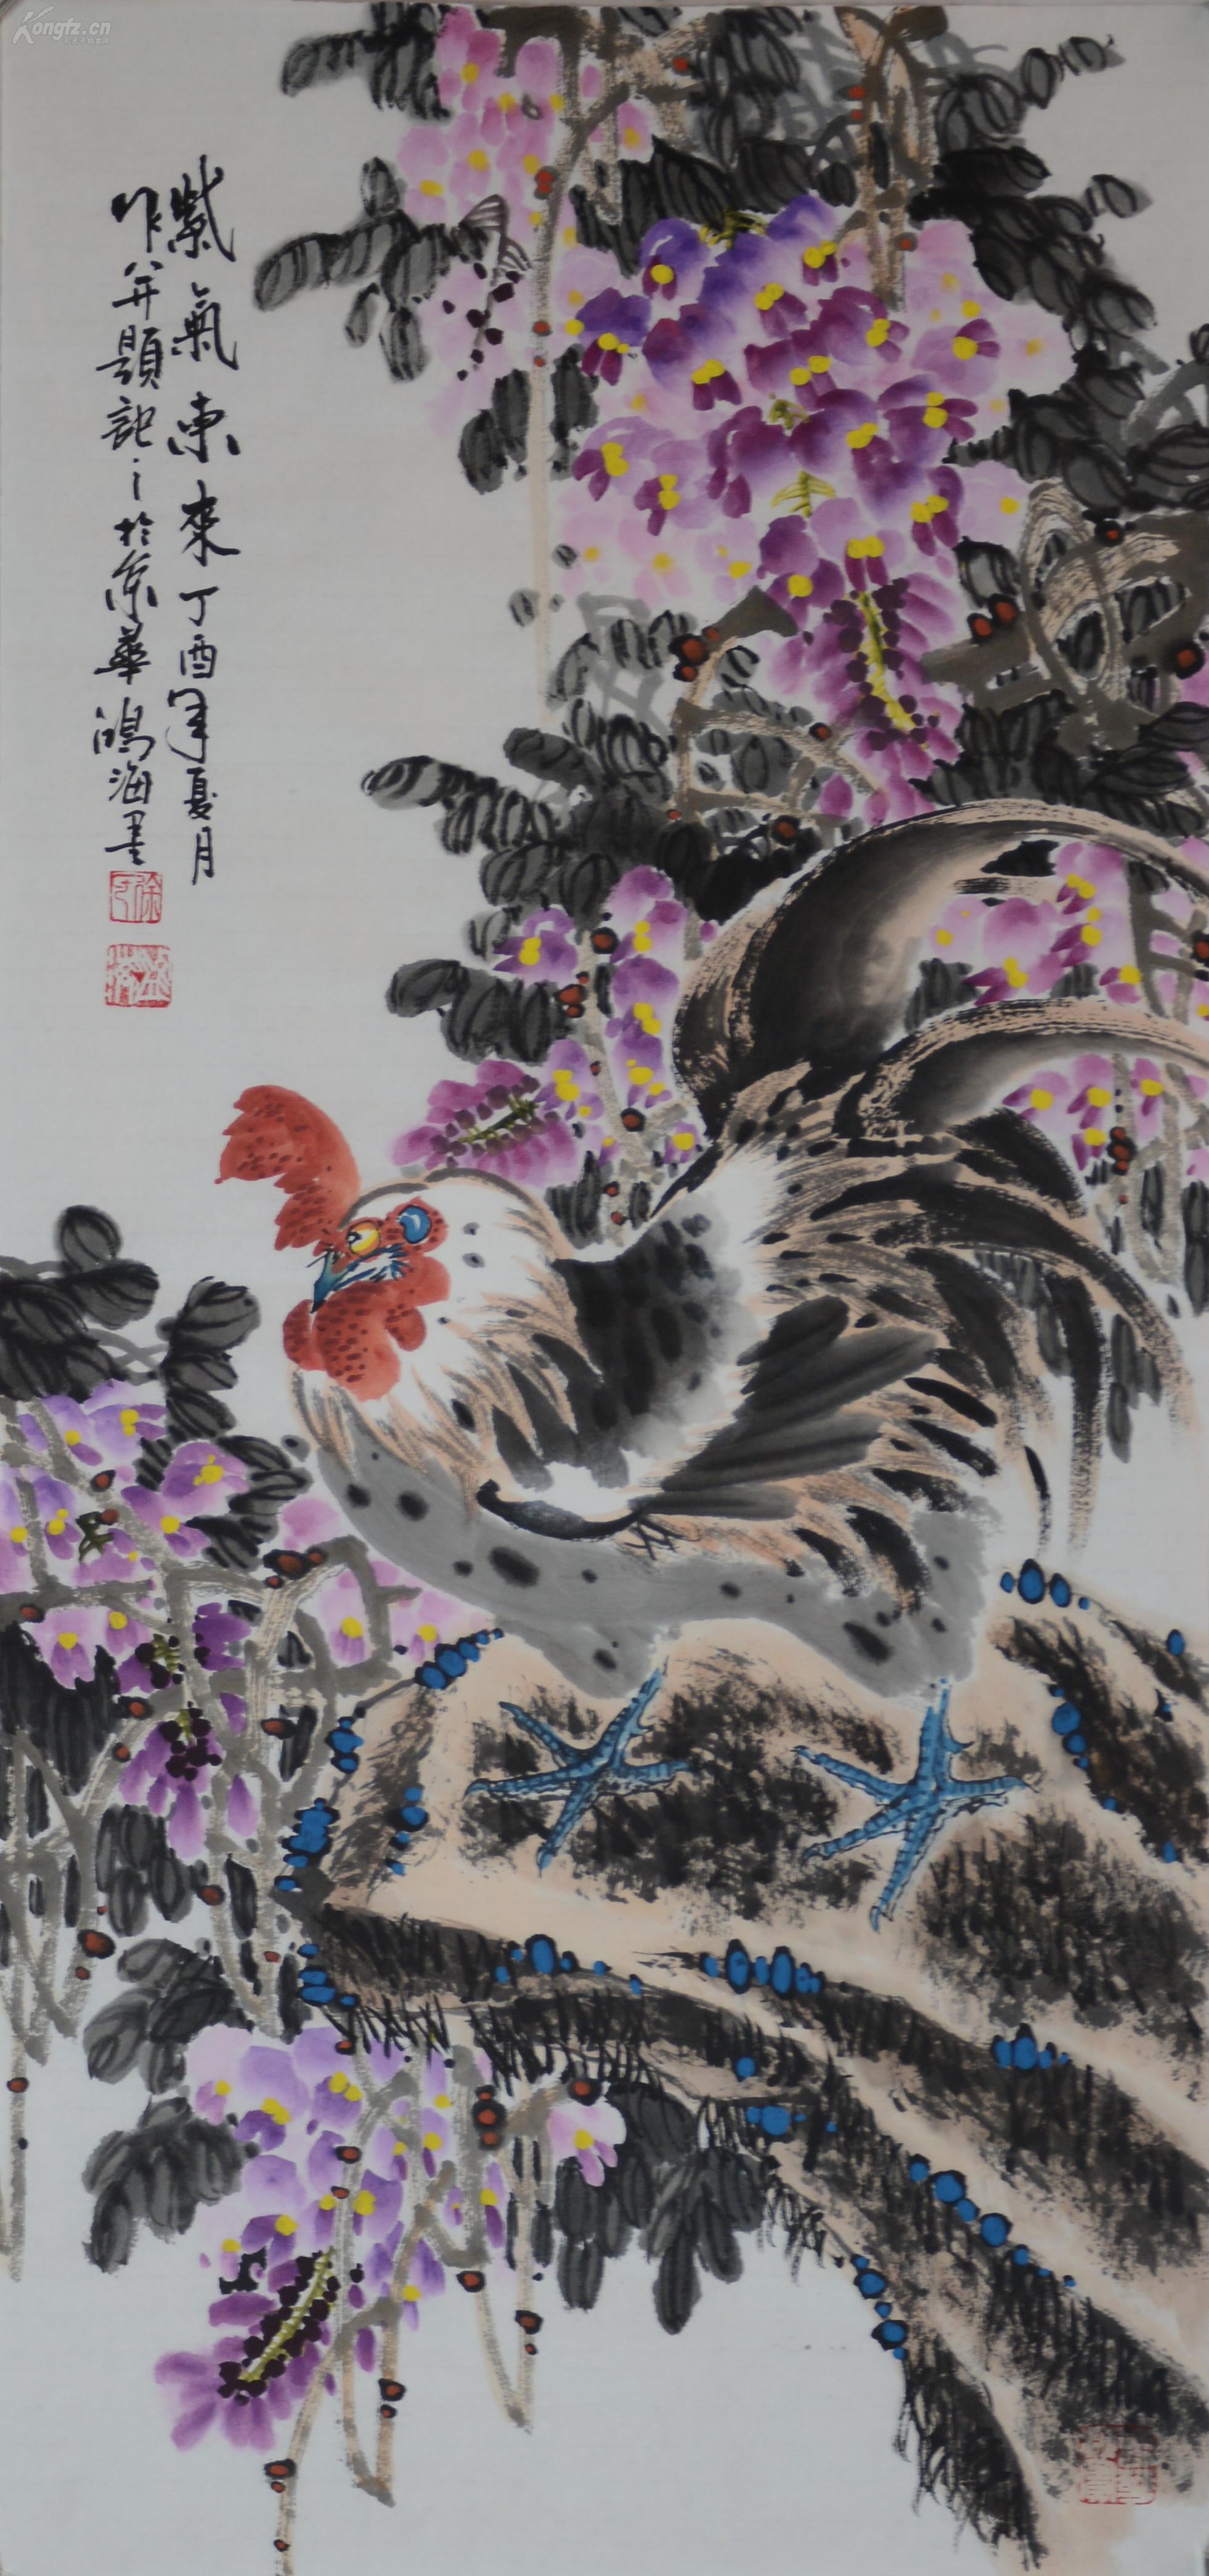 中国美术家协会山东分会会员徐鸿海《紫气东来》,约95